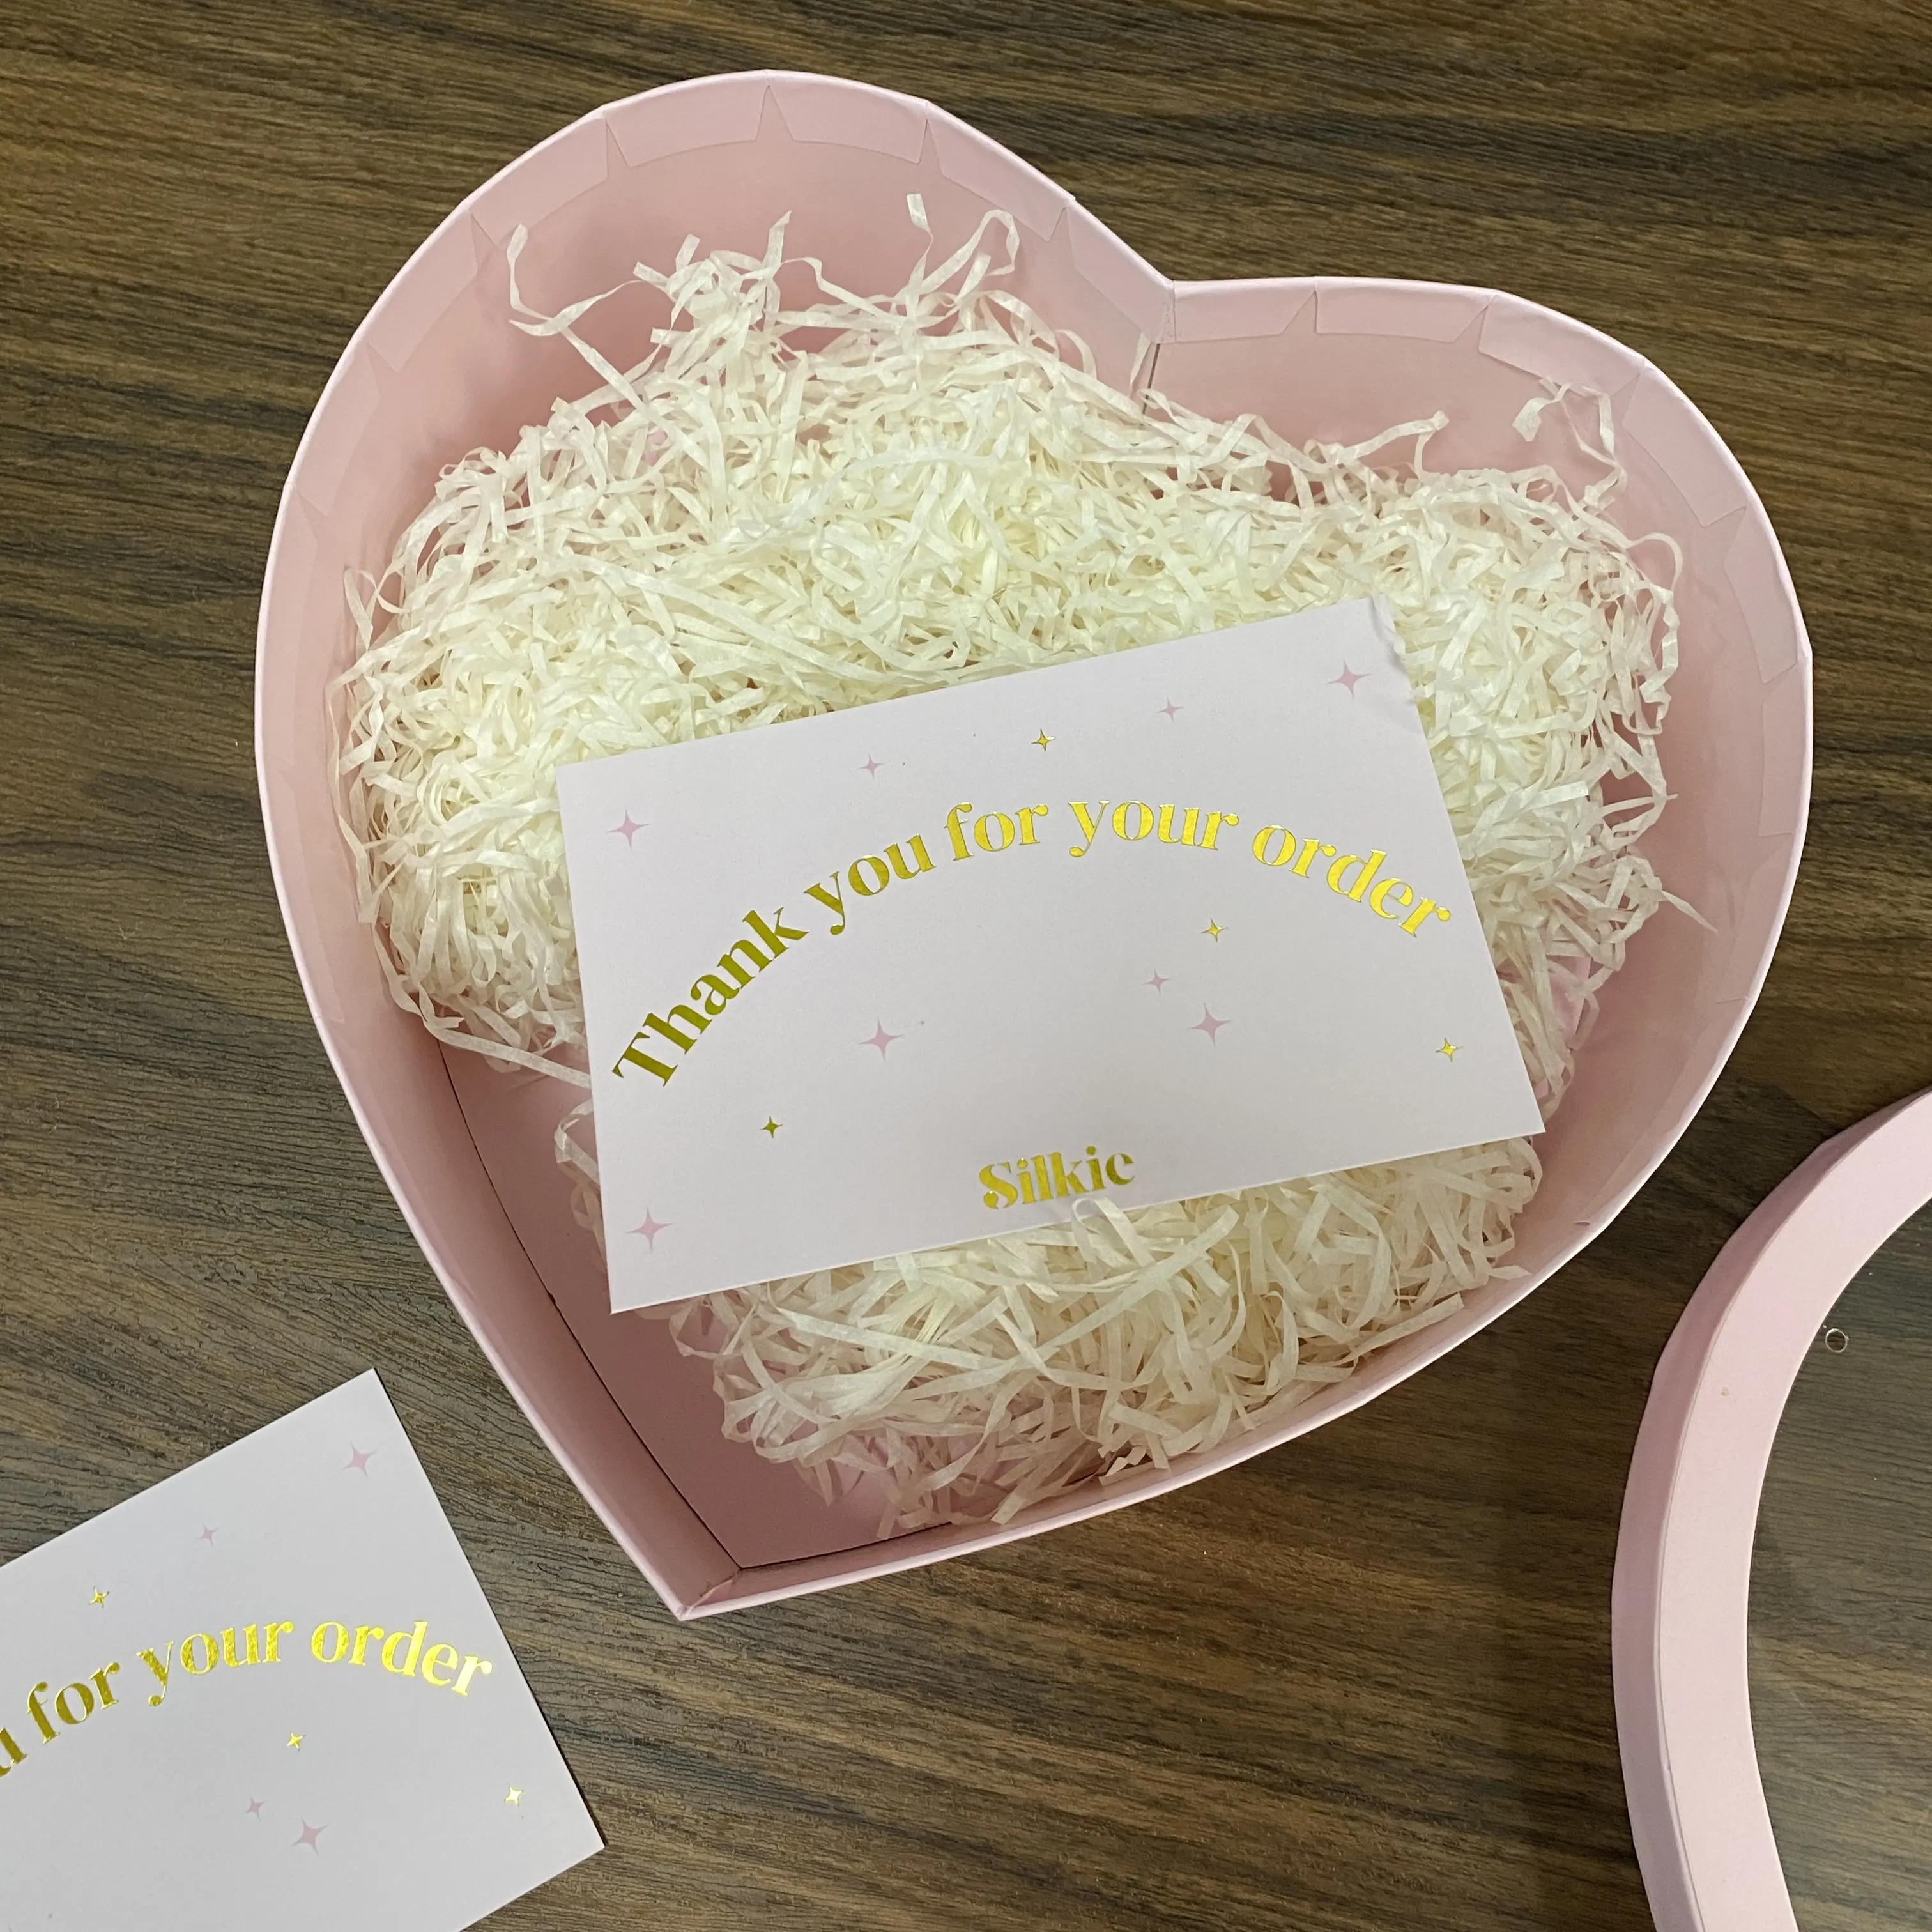 Emballage personalizado, embalaje grande vacío, cajas de papel de regalo en forma de corazón rosa con ventana transparente de pvc en la tapa para regalo de flores